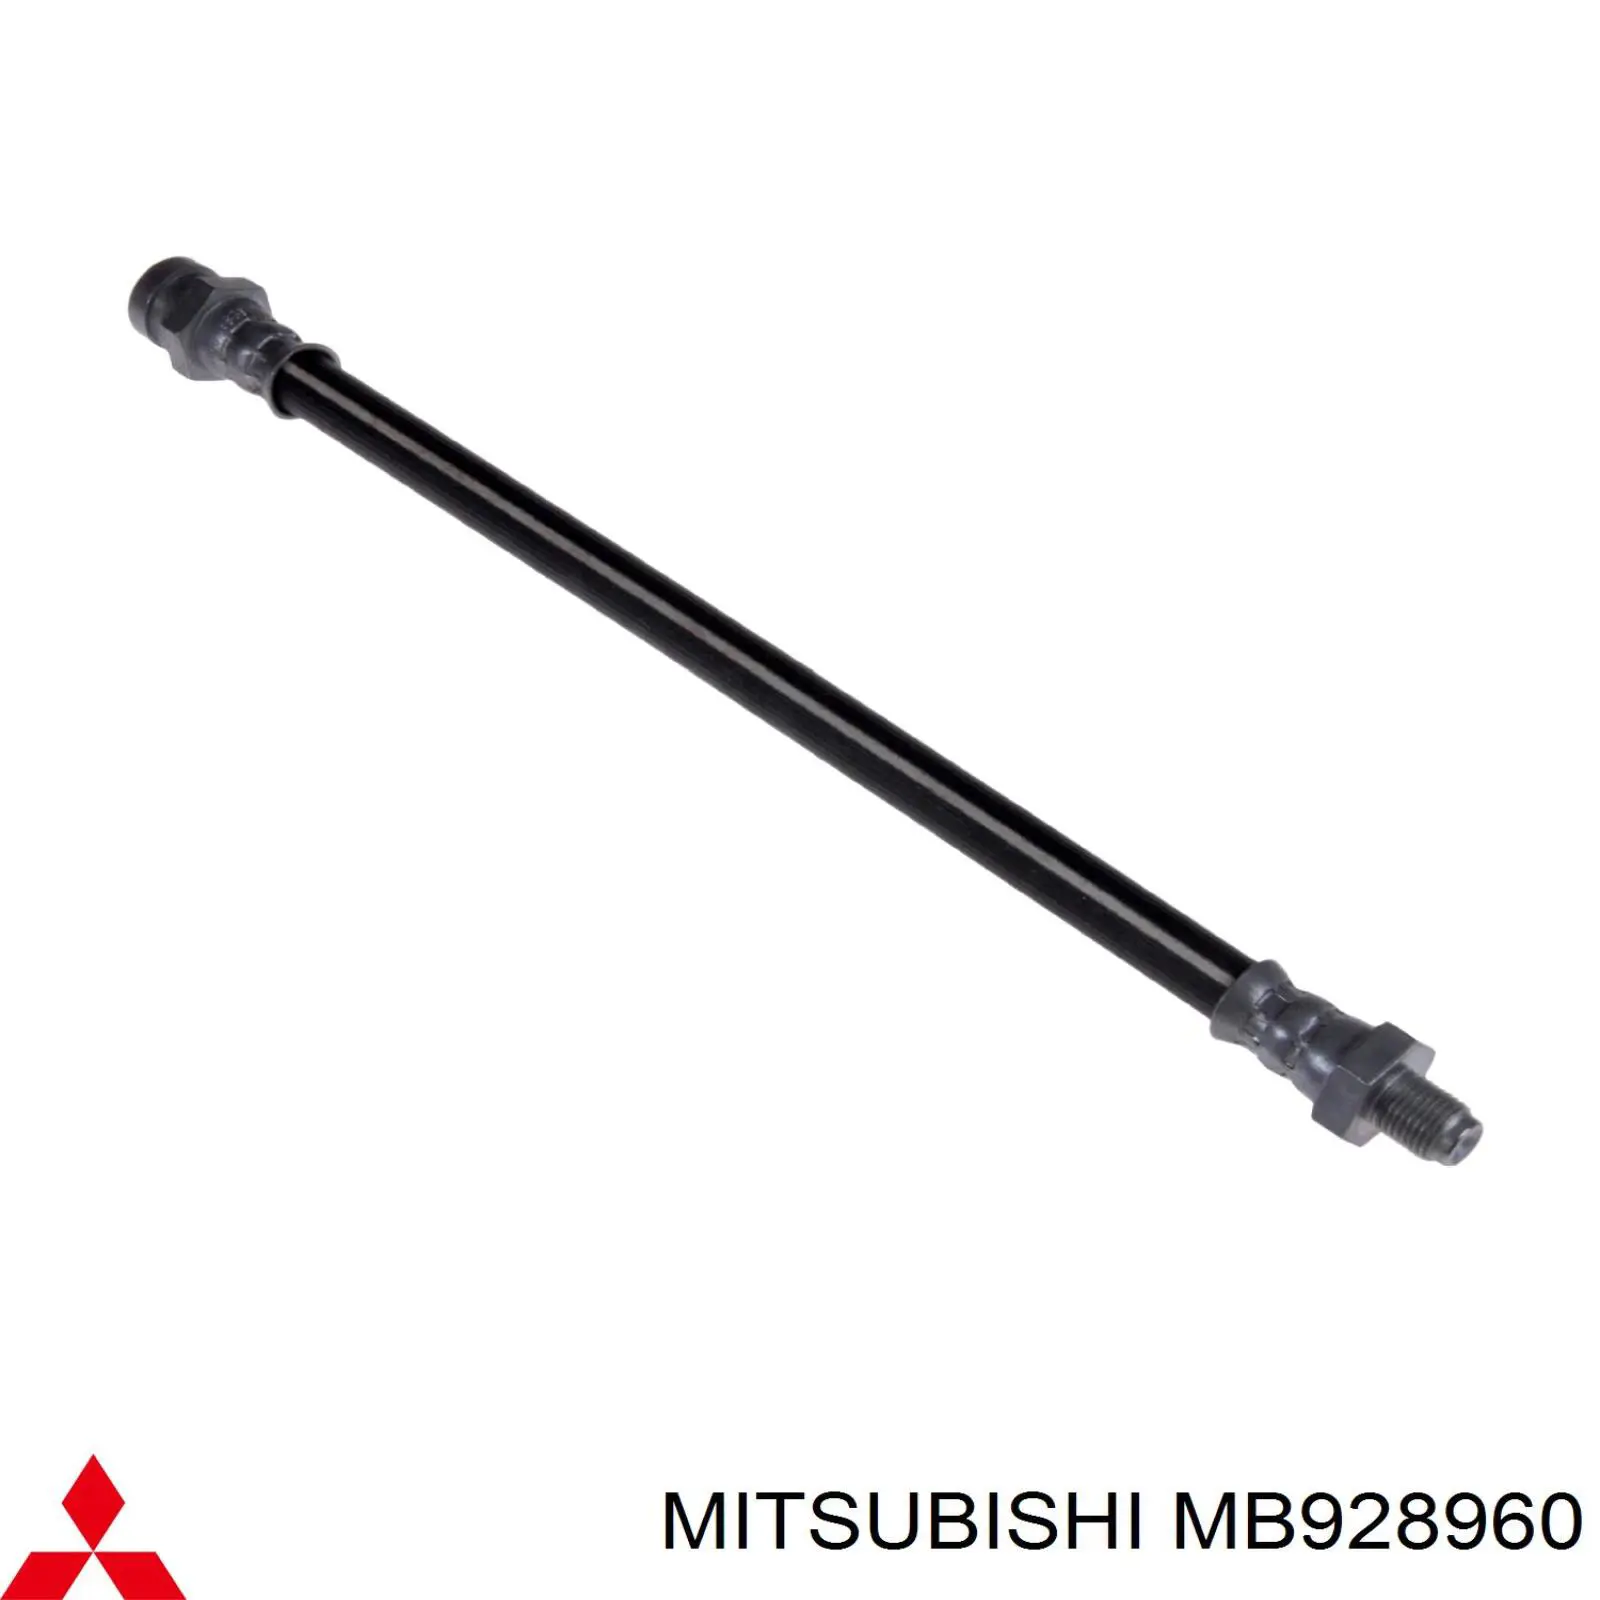 MB928960 Mitsubishi